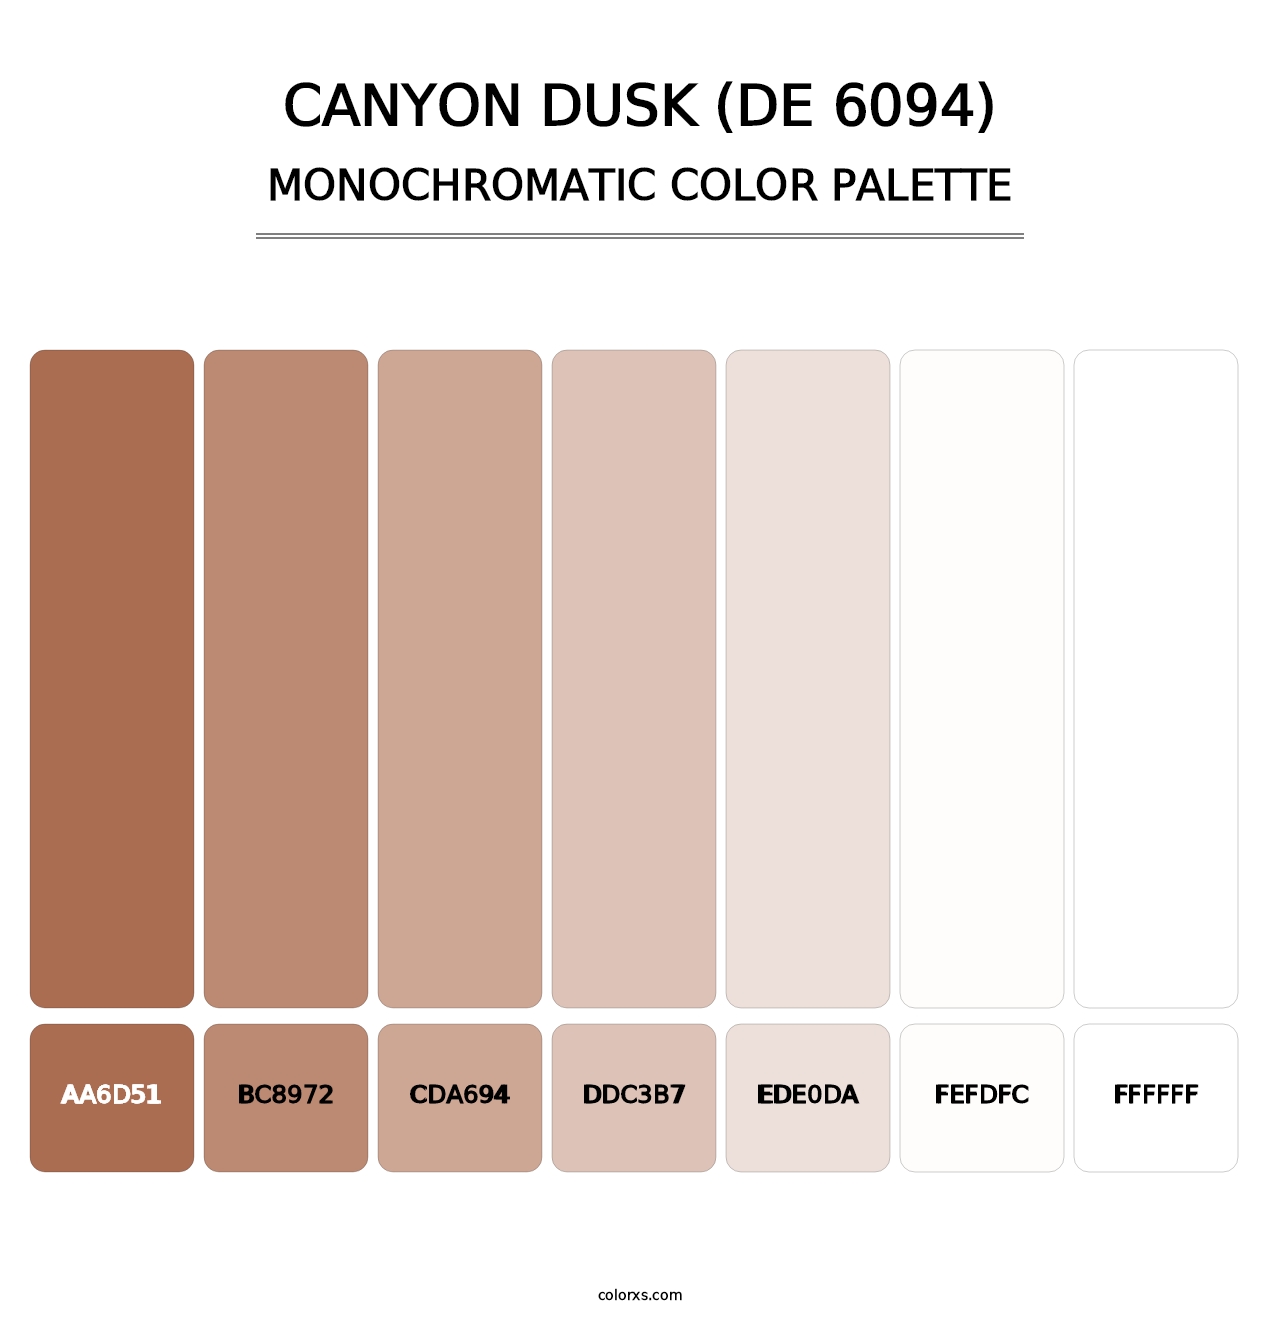 Canyon Dusk (DE 6094) - Monochromatic Color Palette